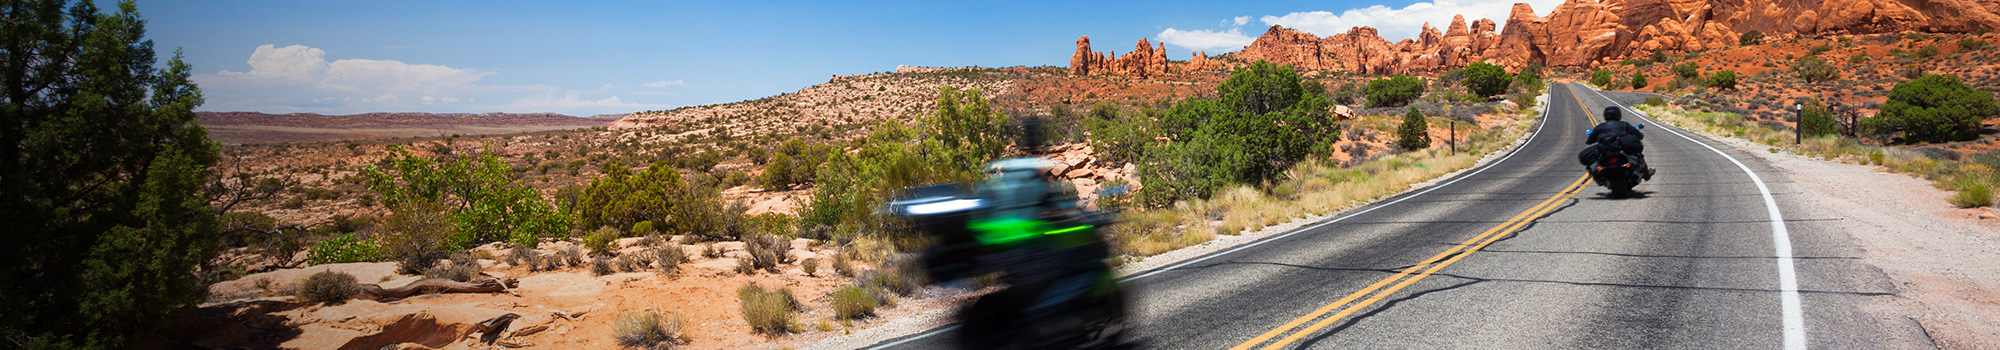 Zwei Motorradfahrer auf einer kargen Landstraße in der Wüste 